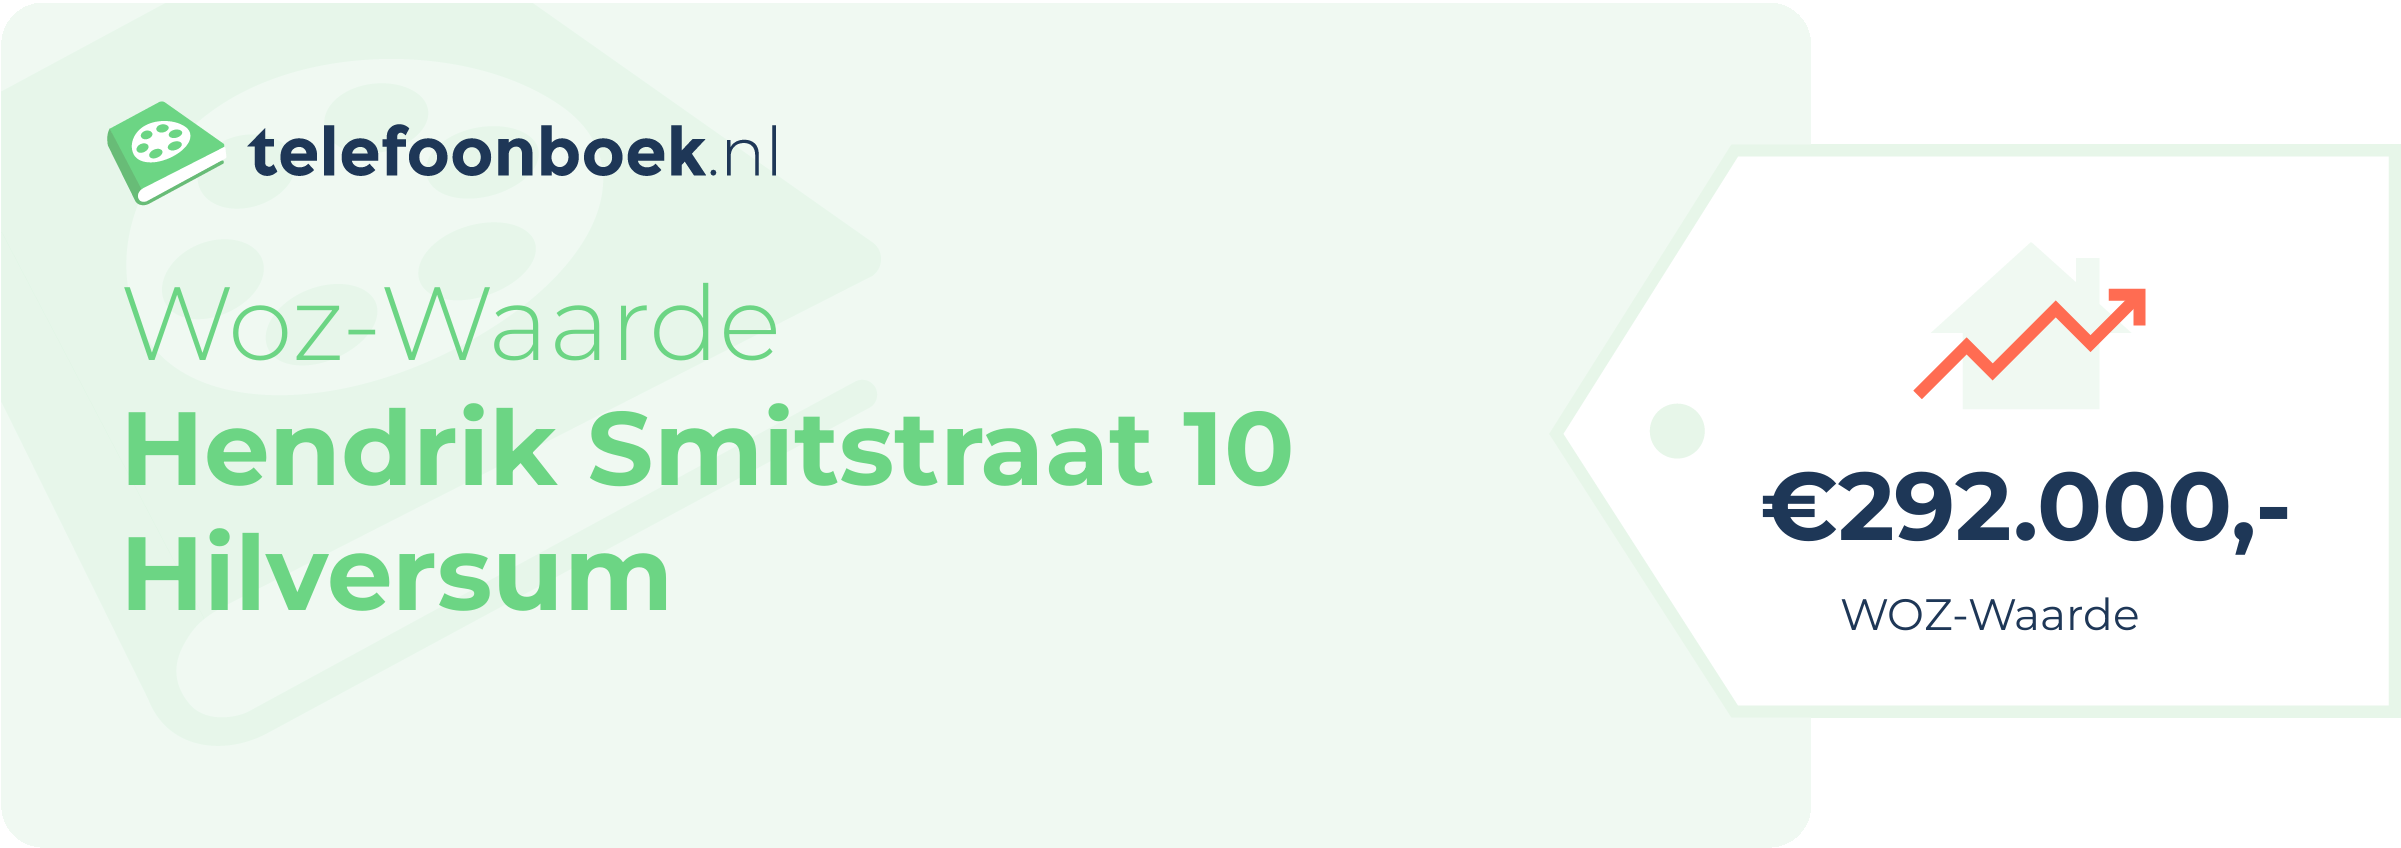 WOZ-waarde Hendrik Smitstraat 10 Hilversum